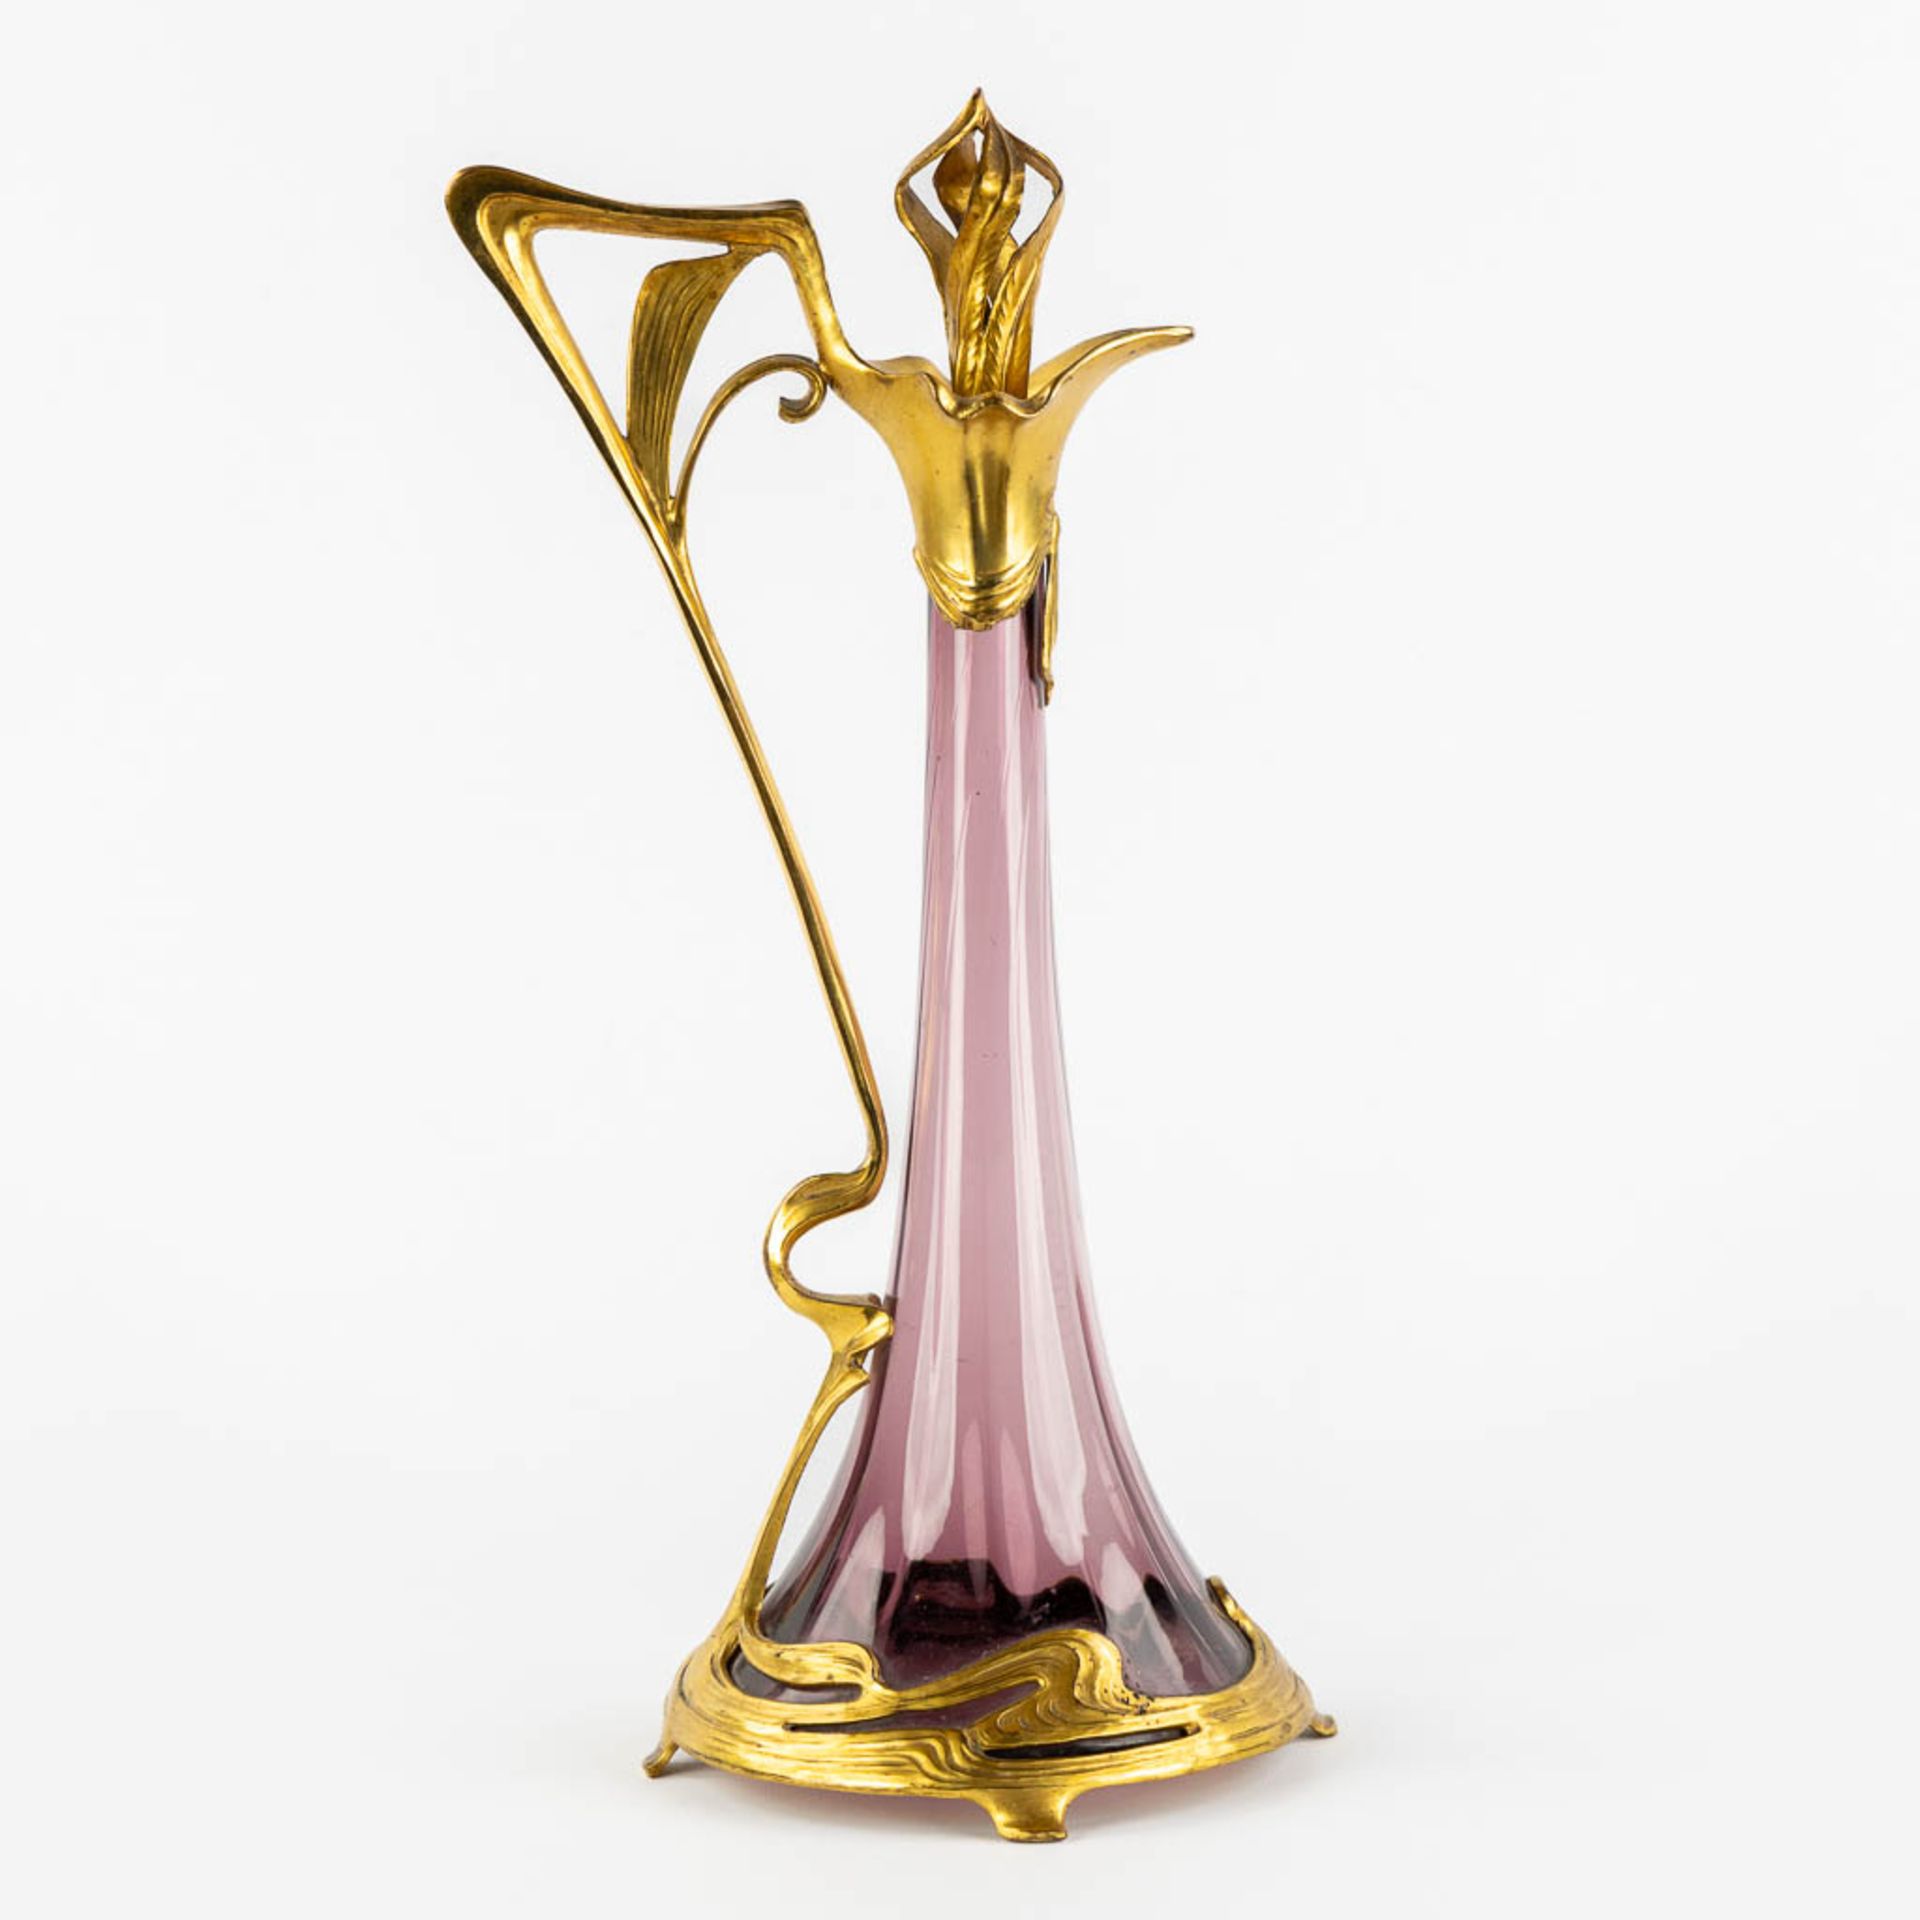 A pitcher, gilt metal and purple glass, Art Nouveau. (L:16 x W:20 x H:39 cm) - Image 3 of 11